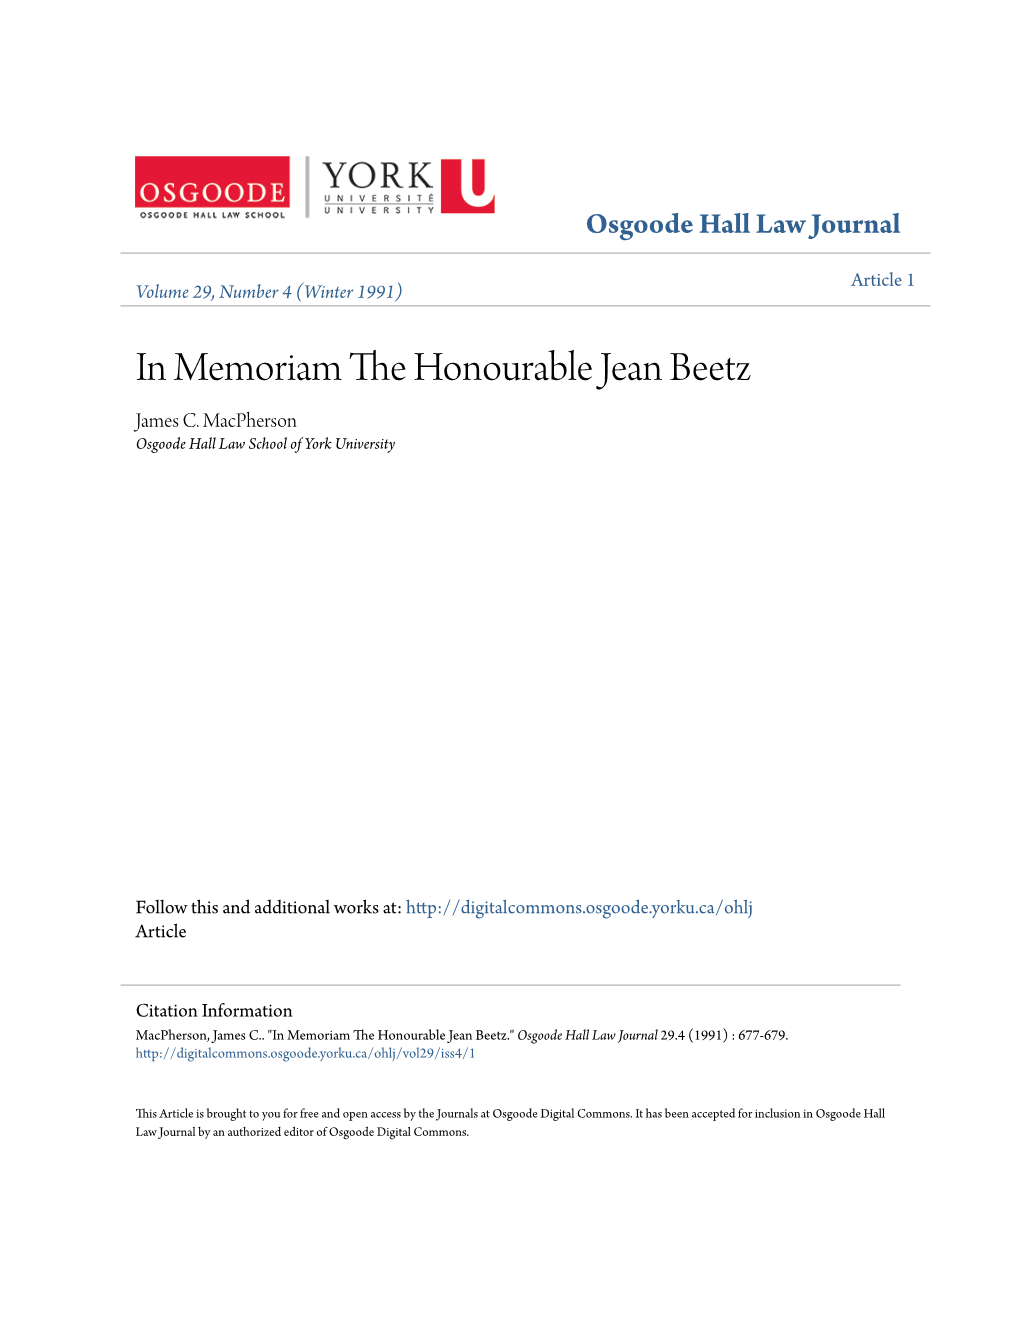 In Memoriam the Honourable Jean Beetz